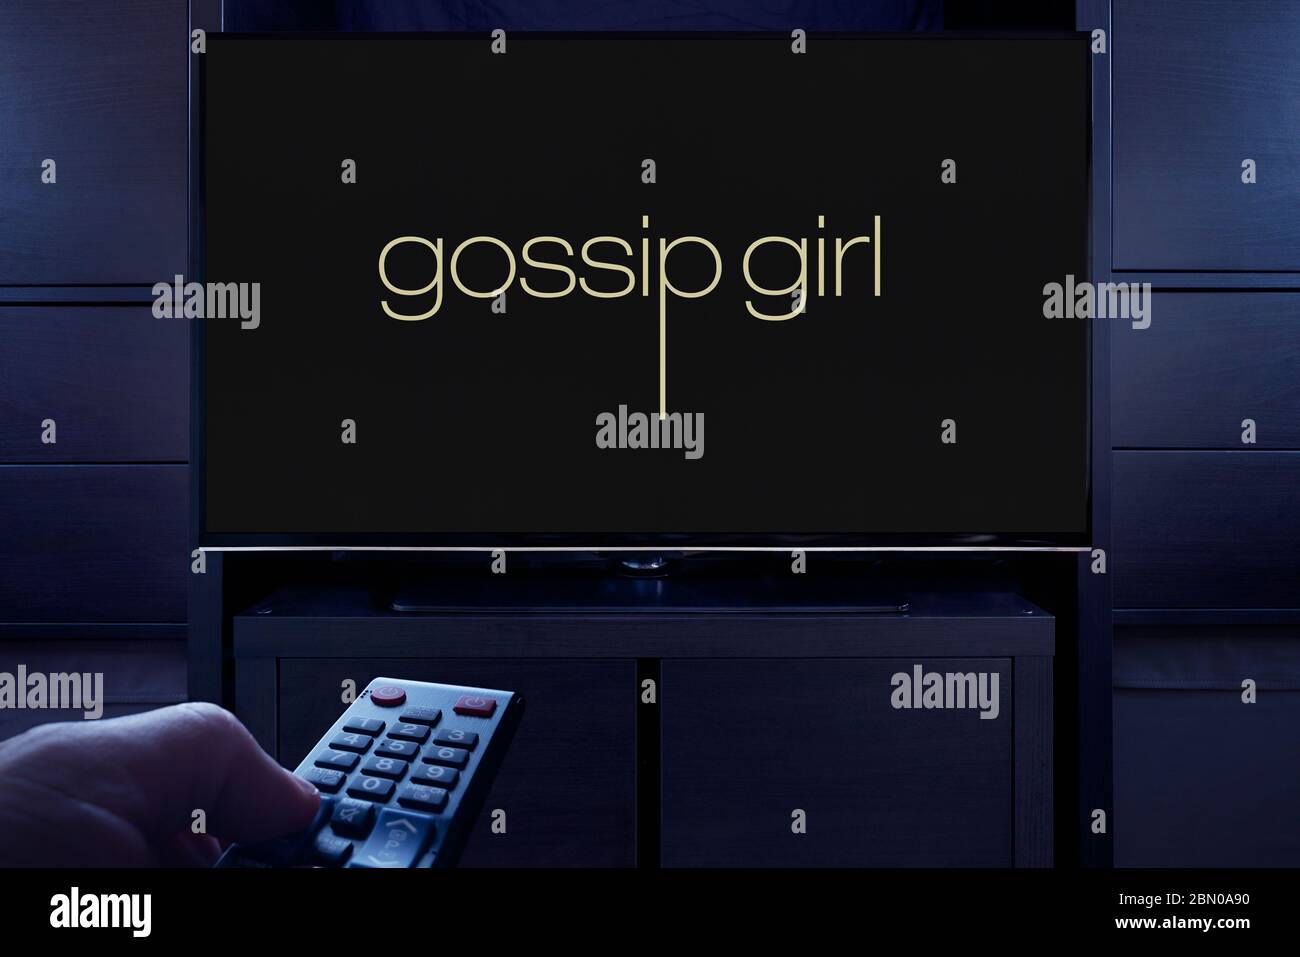 Un homme pointe une télécommande de télévision sur le téléviseur qui affiche l'écran principal de Gossip Girl (usage éditorial uniquement). Banque D'Images